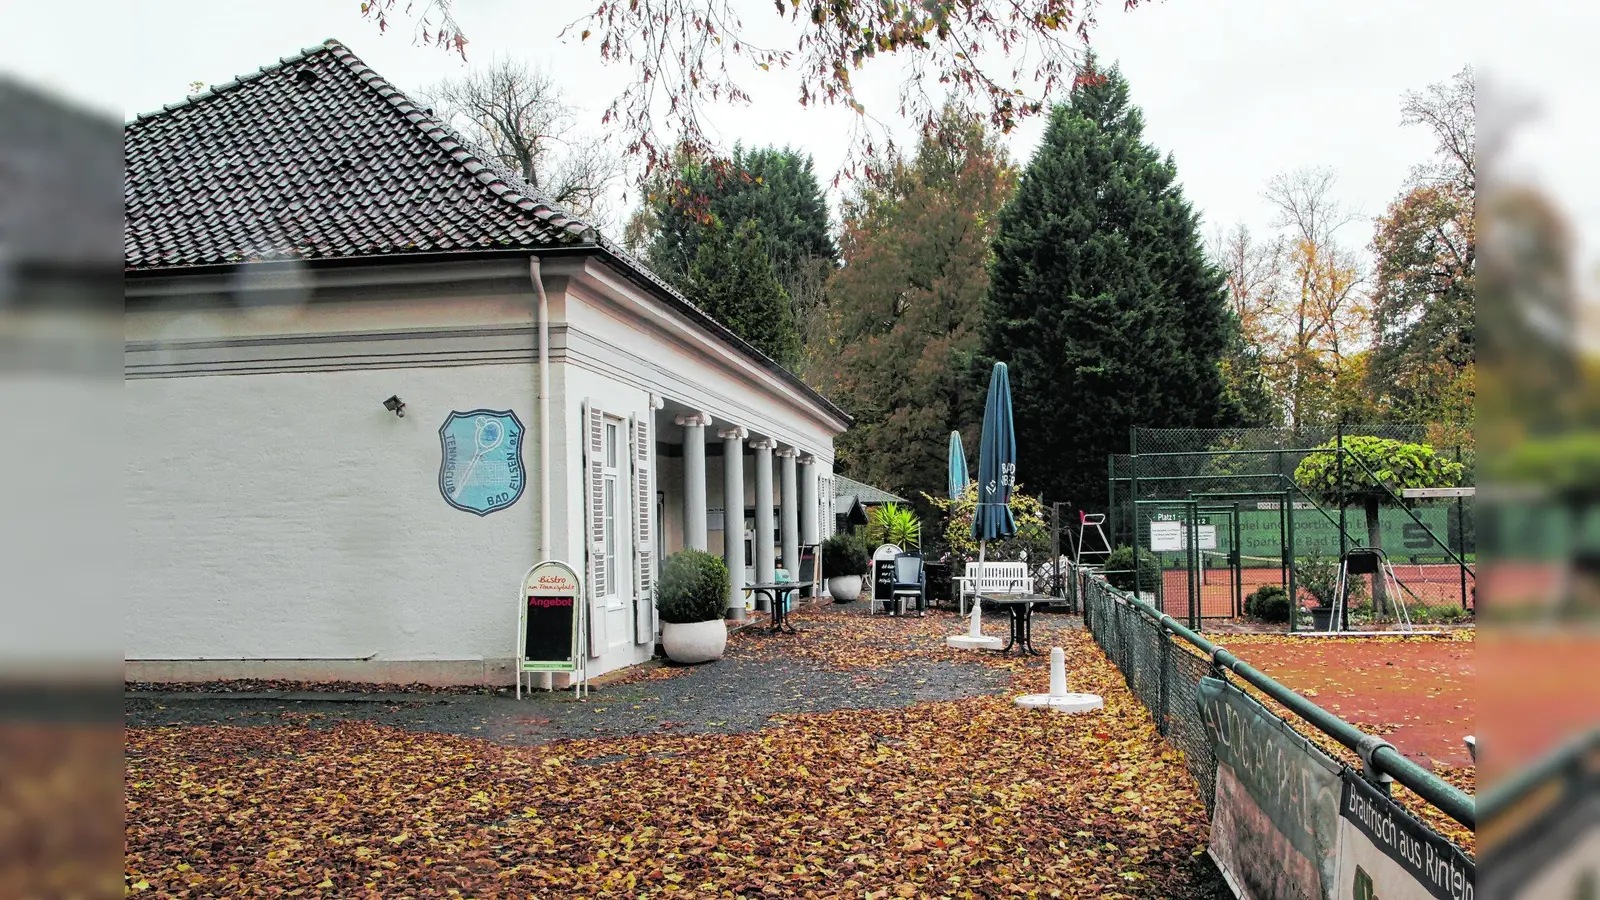 Tennisclub will renovieren (Foto: nh)